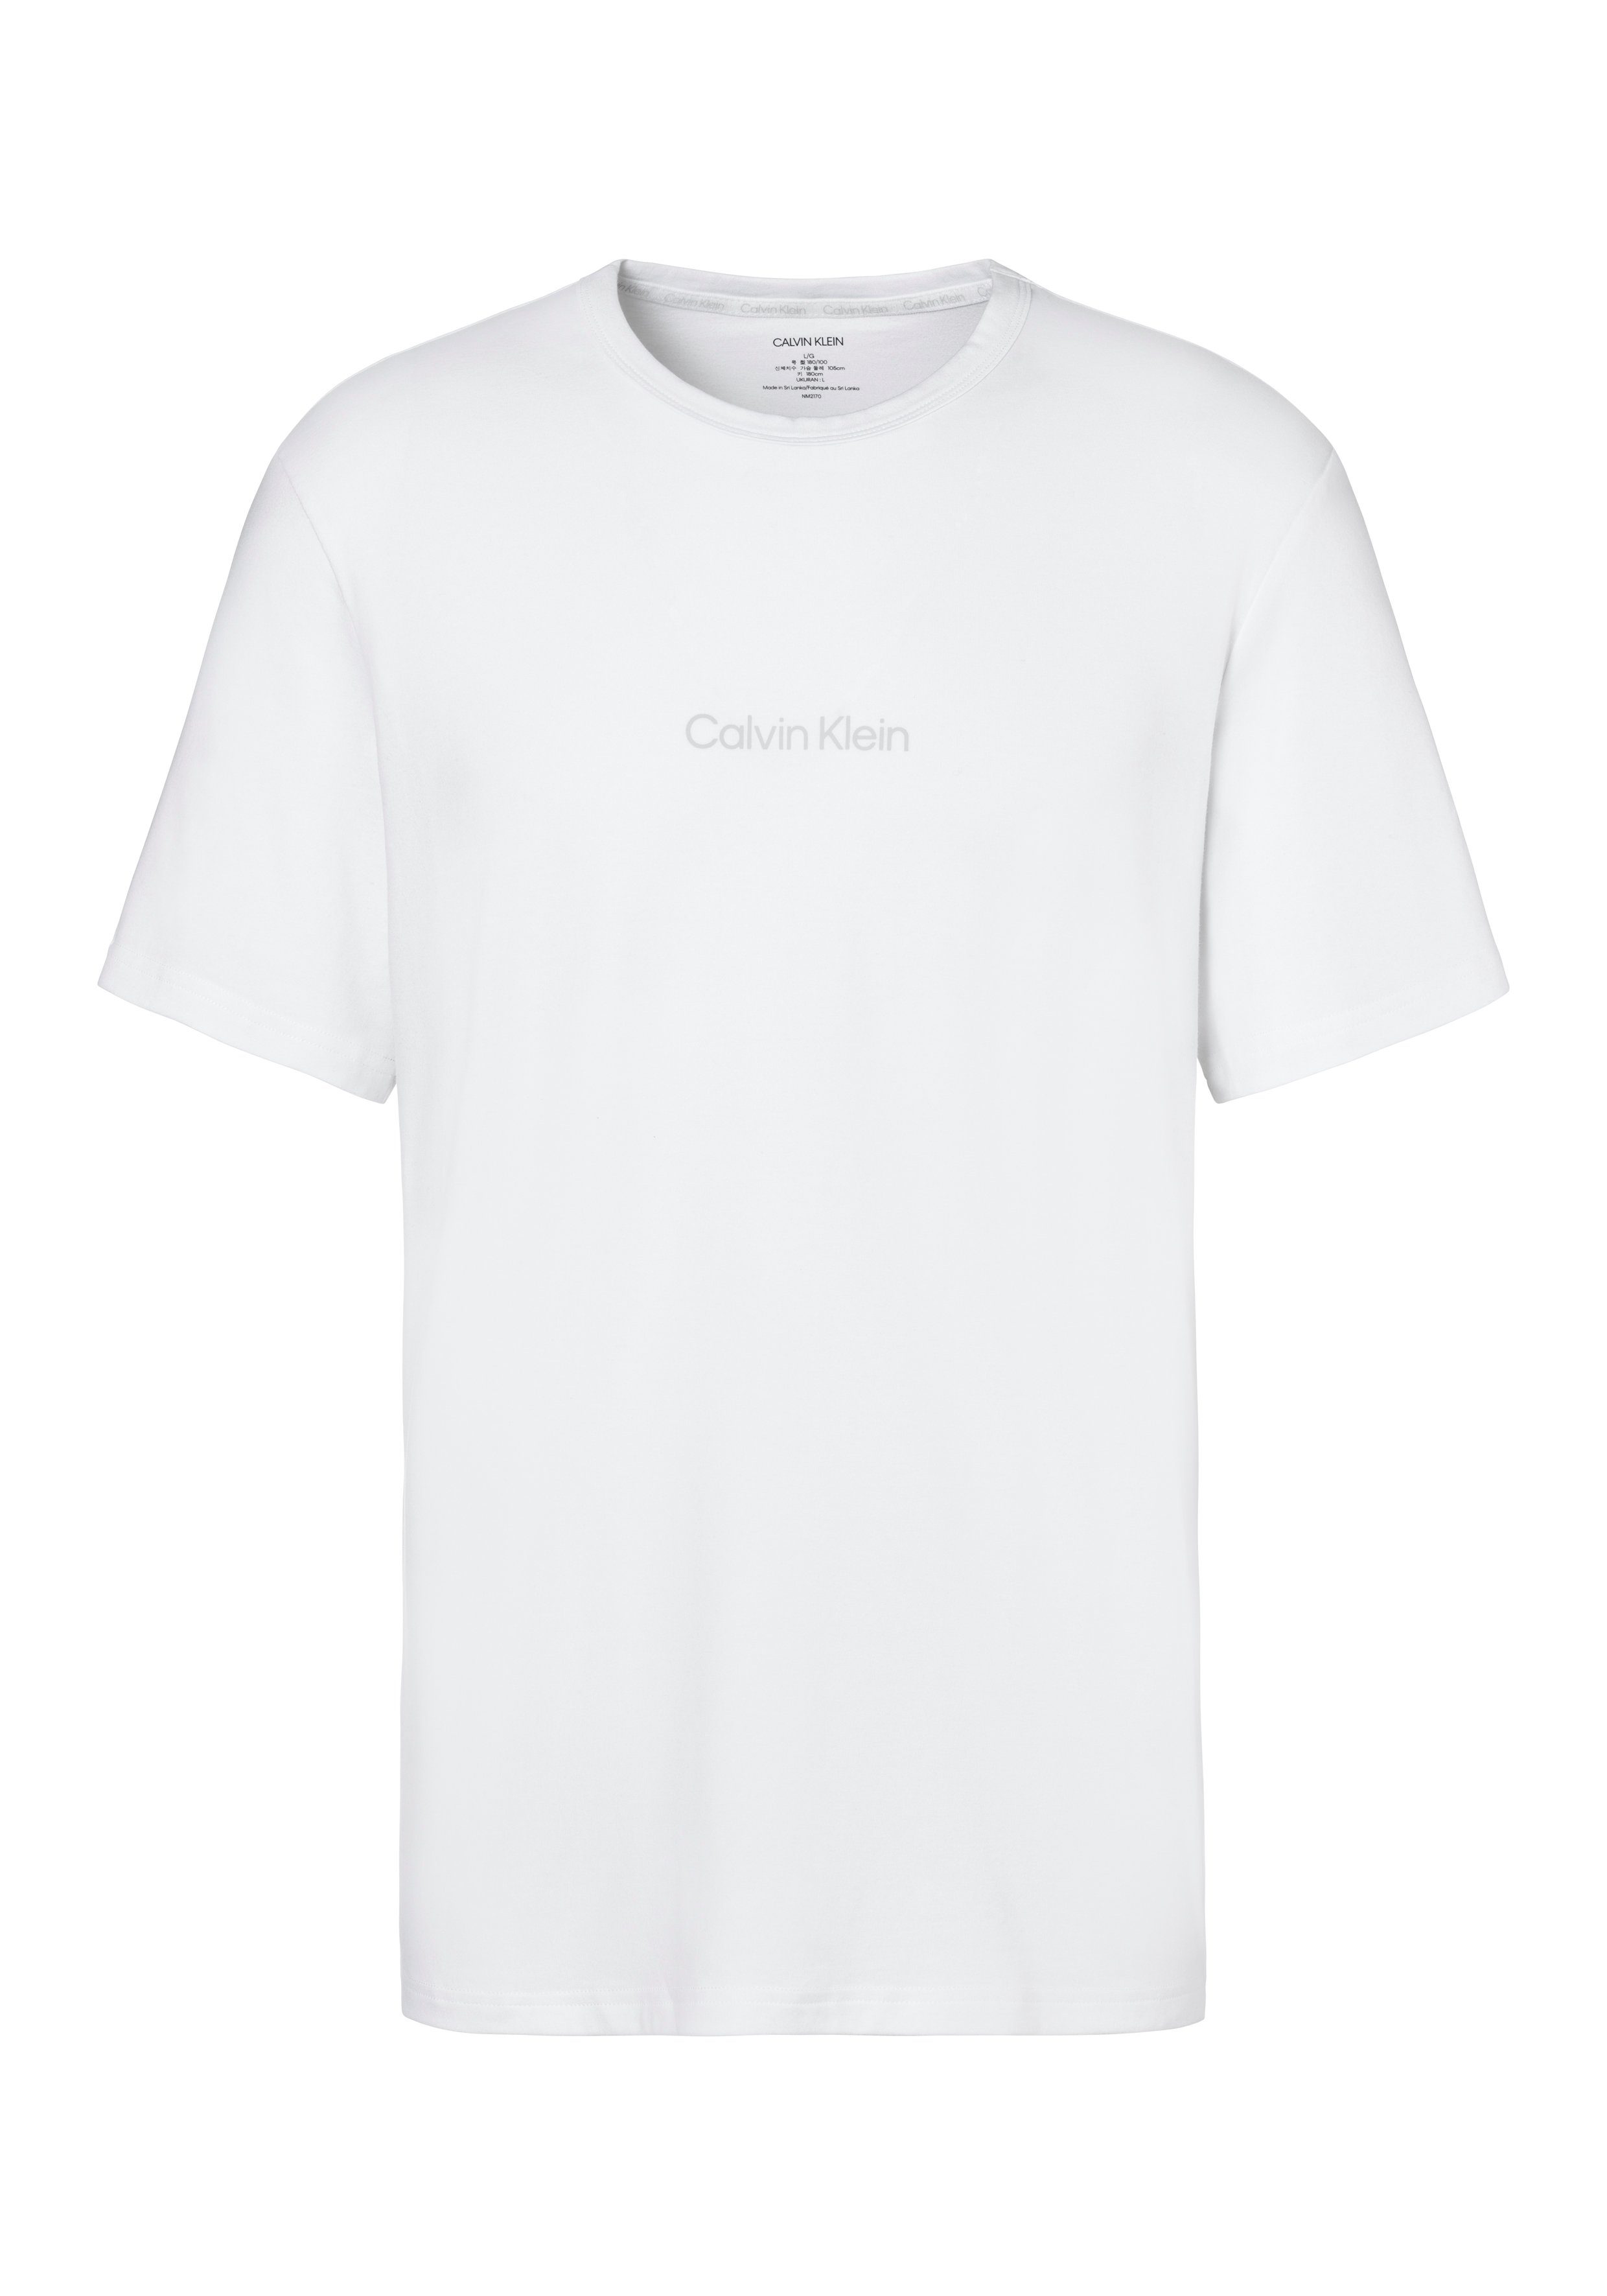 Underwear Druck T-Shirt mit Calvin Klein Logo weiß